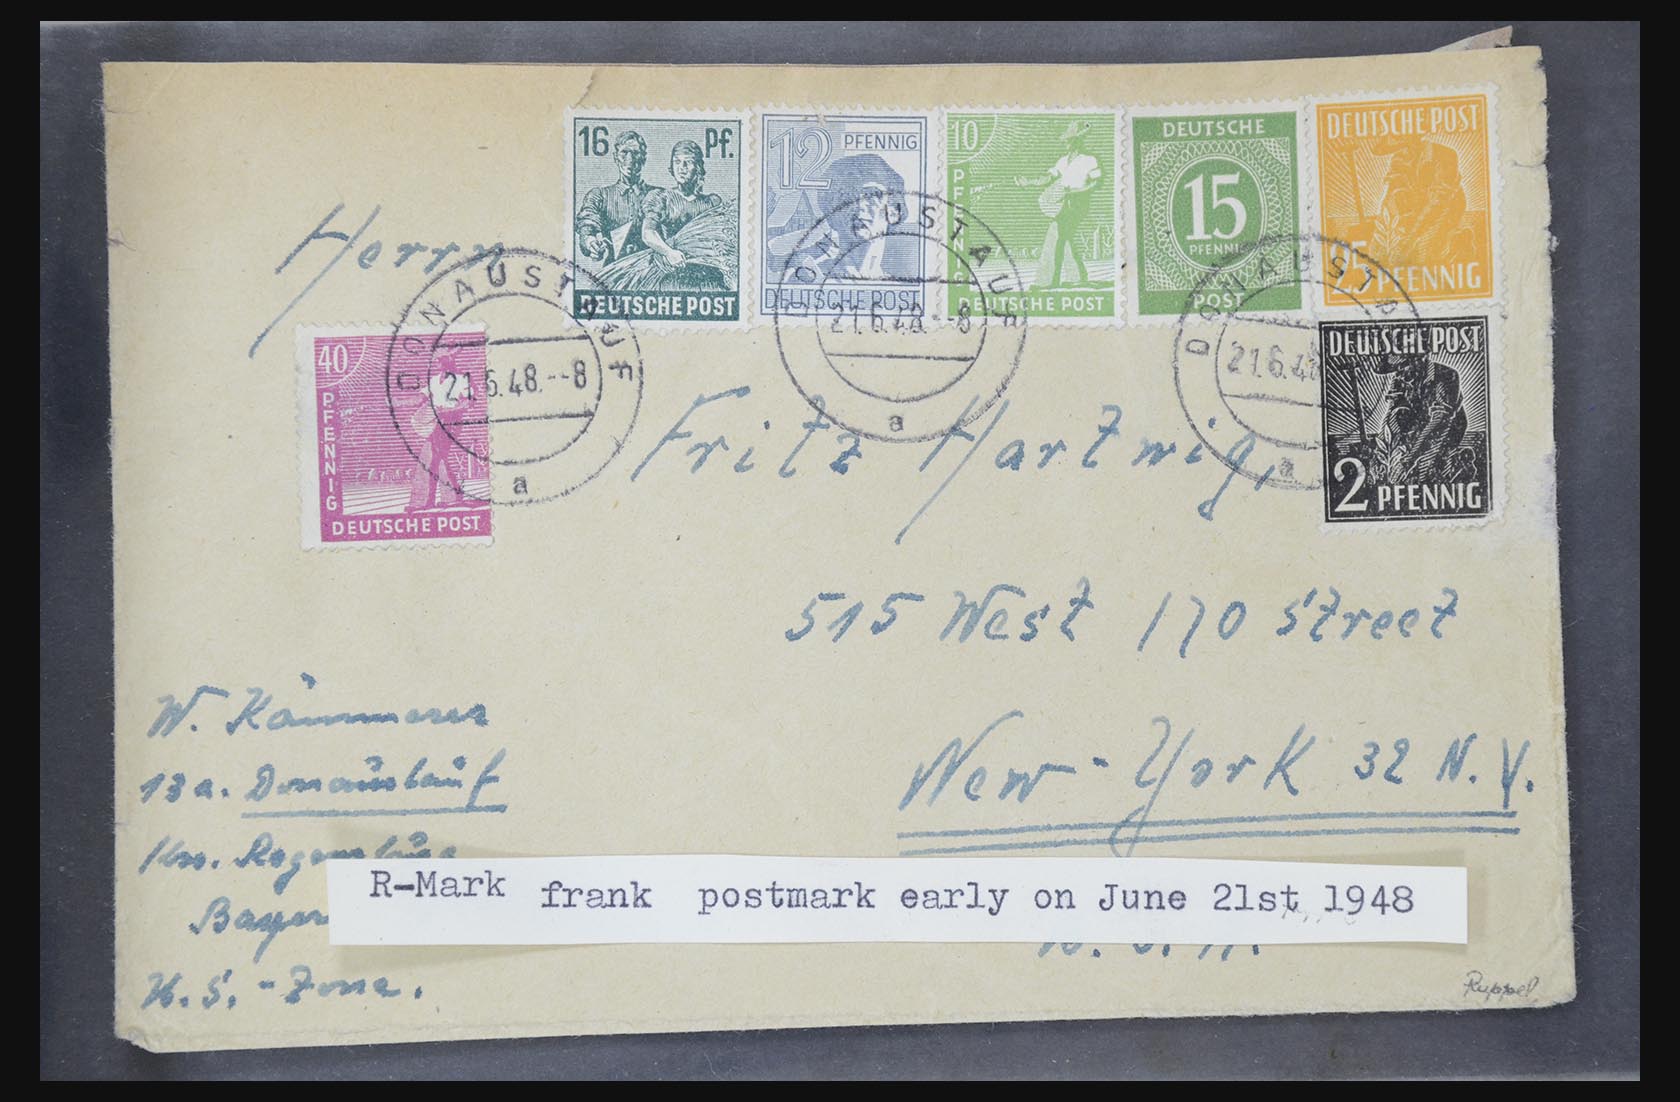 31581 008 - 31581 Duitsland brieven en FDC's 1945-1981.